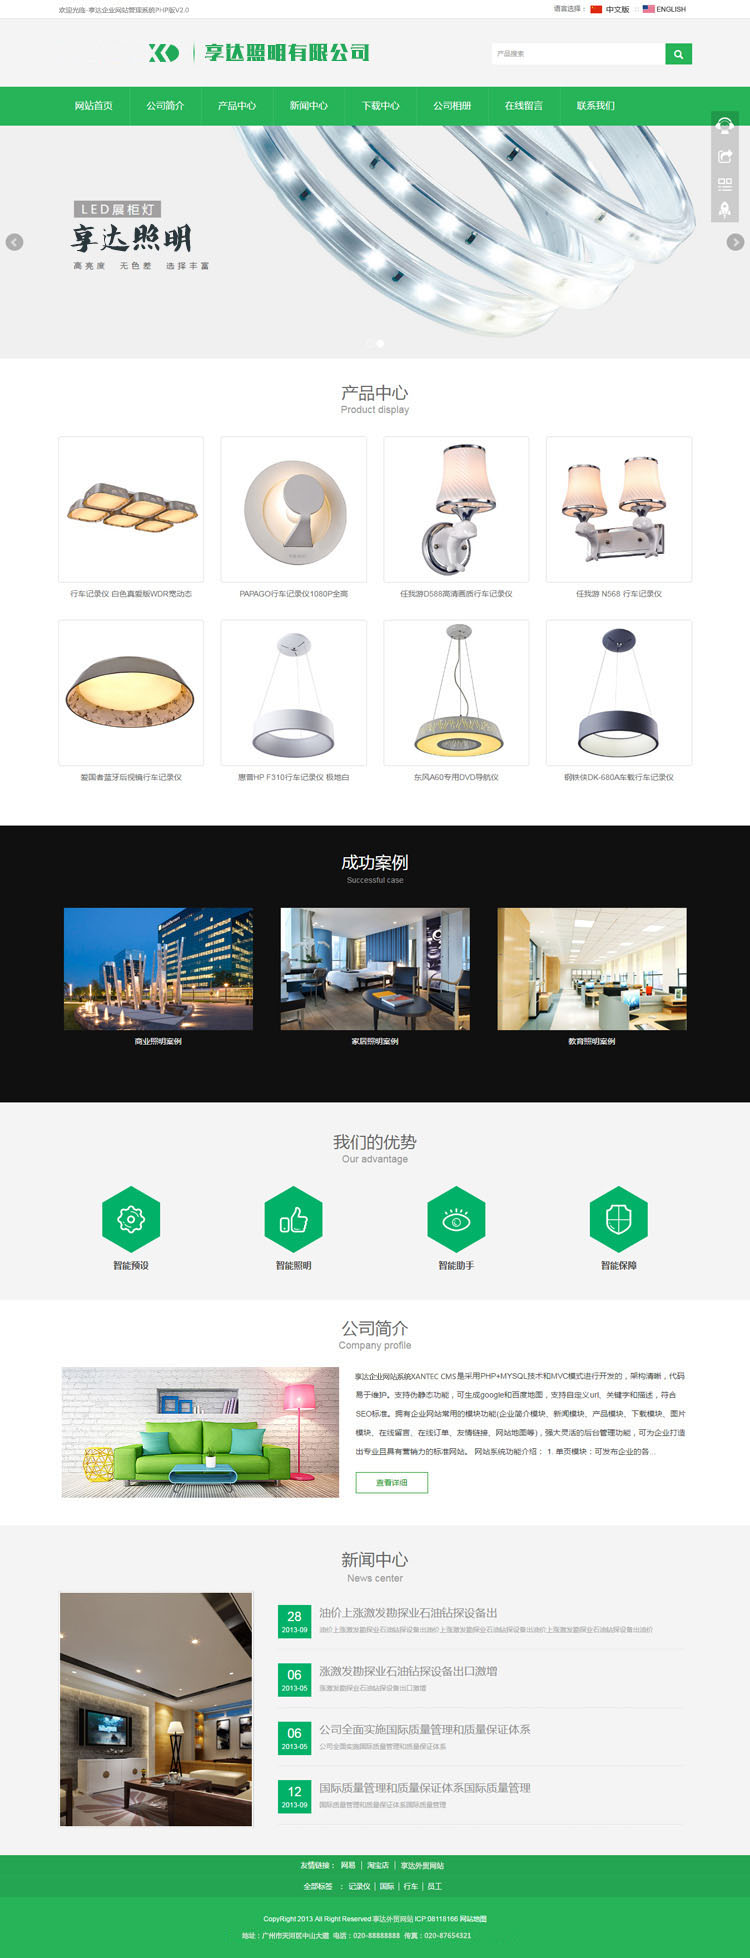 哈尔滨LED工程灯厂家网站设计 | 车间照明灯LED企业网站制作